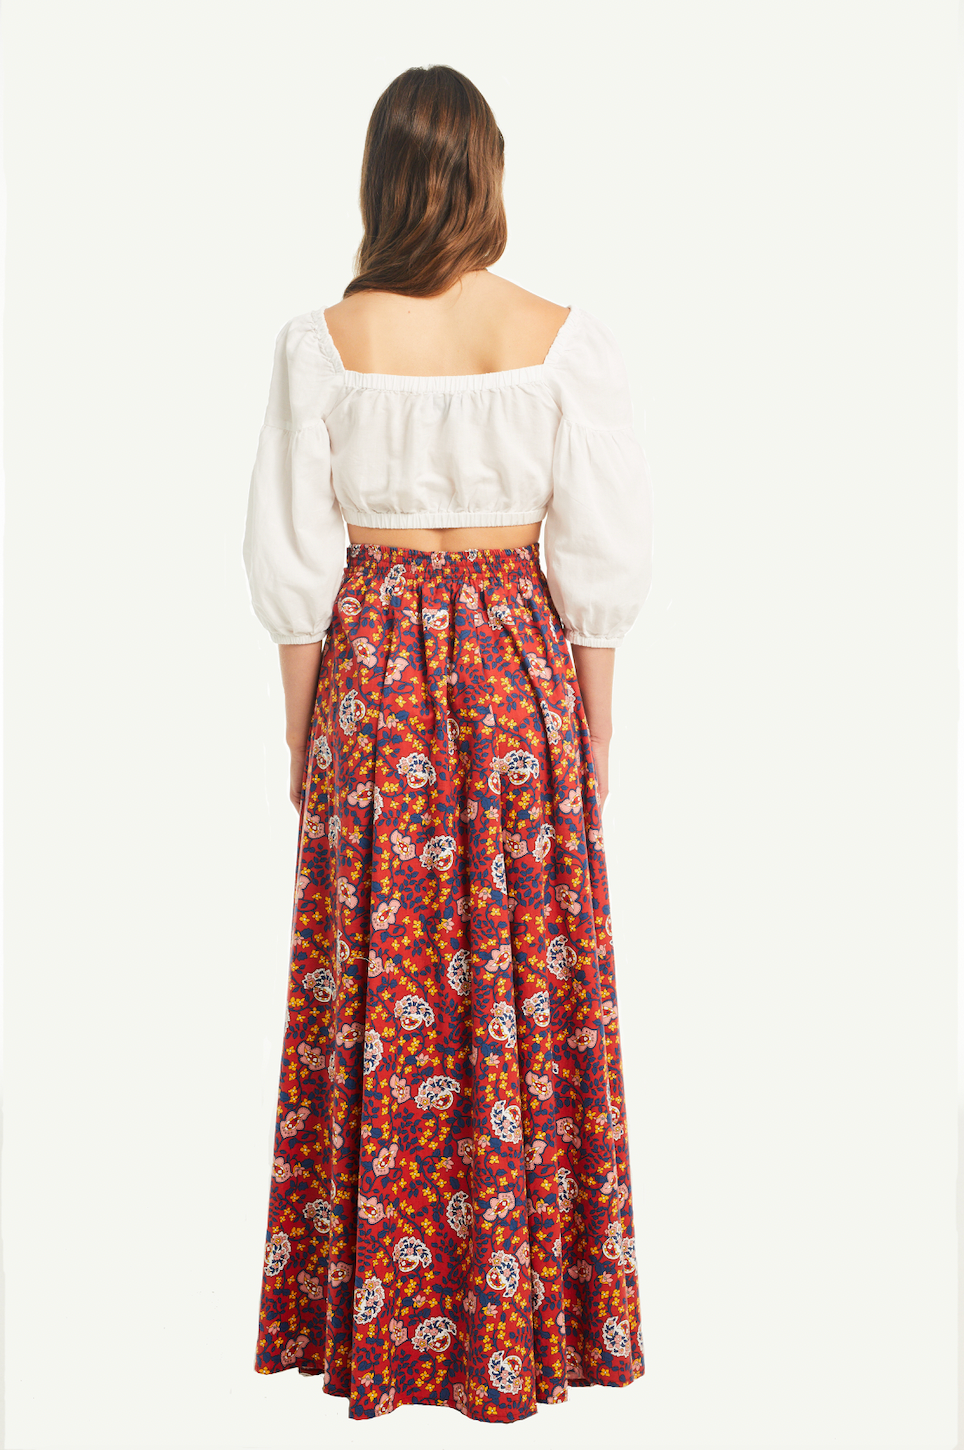 FIORDALISA - long cotton skirt in Nets pattern